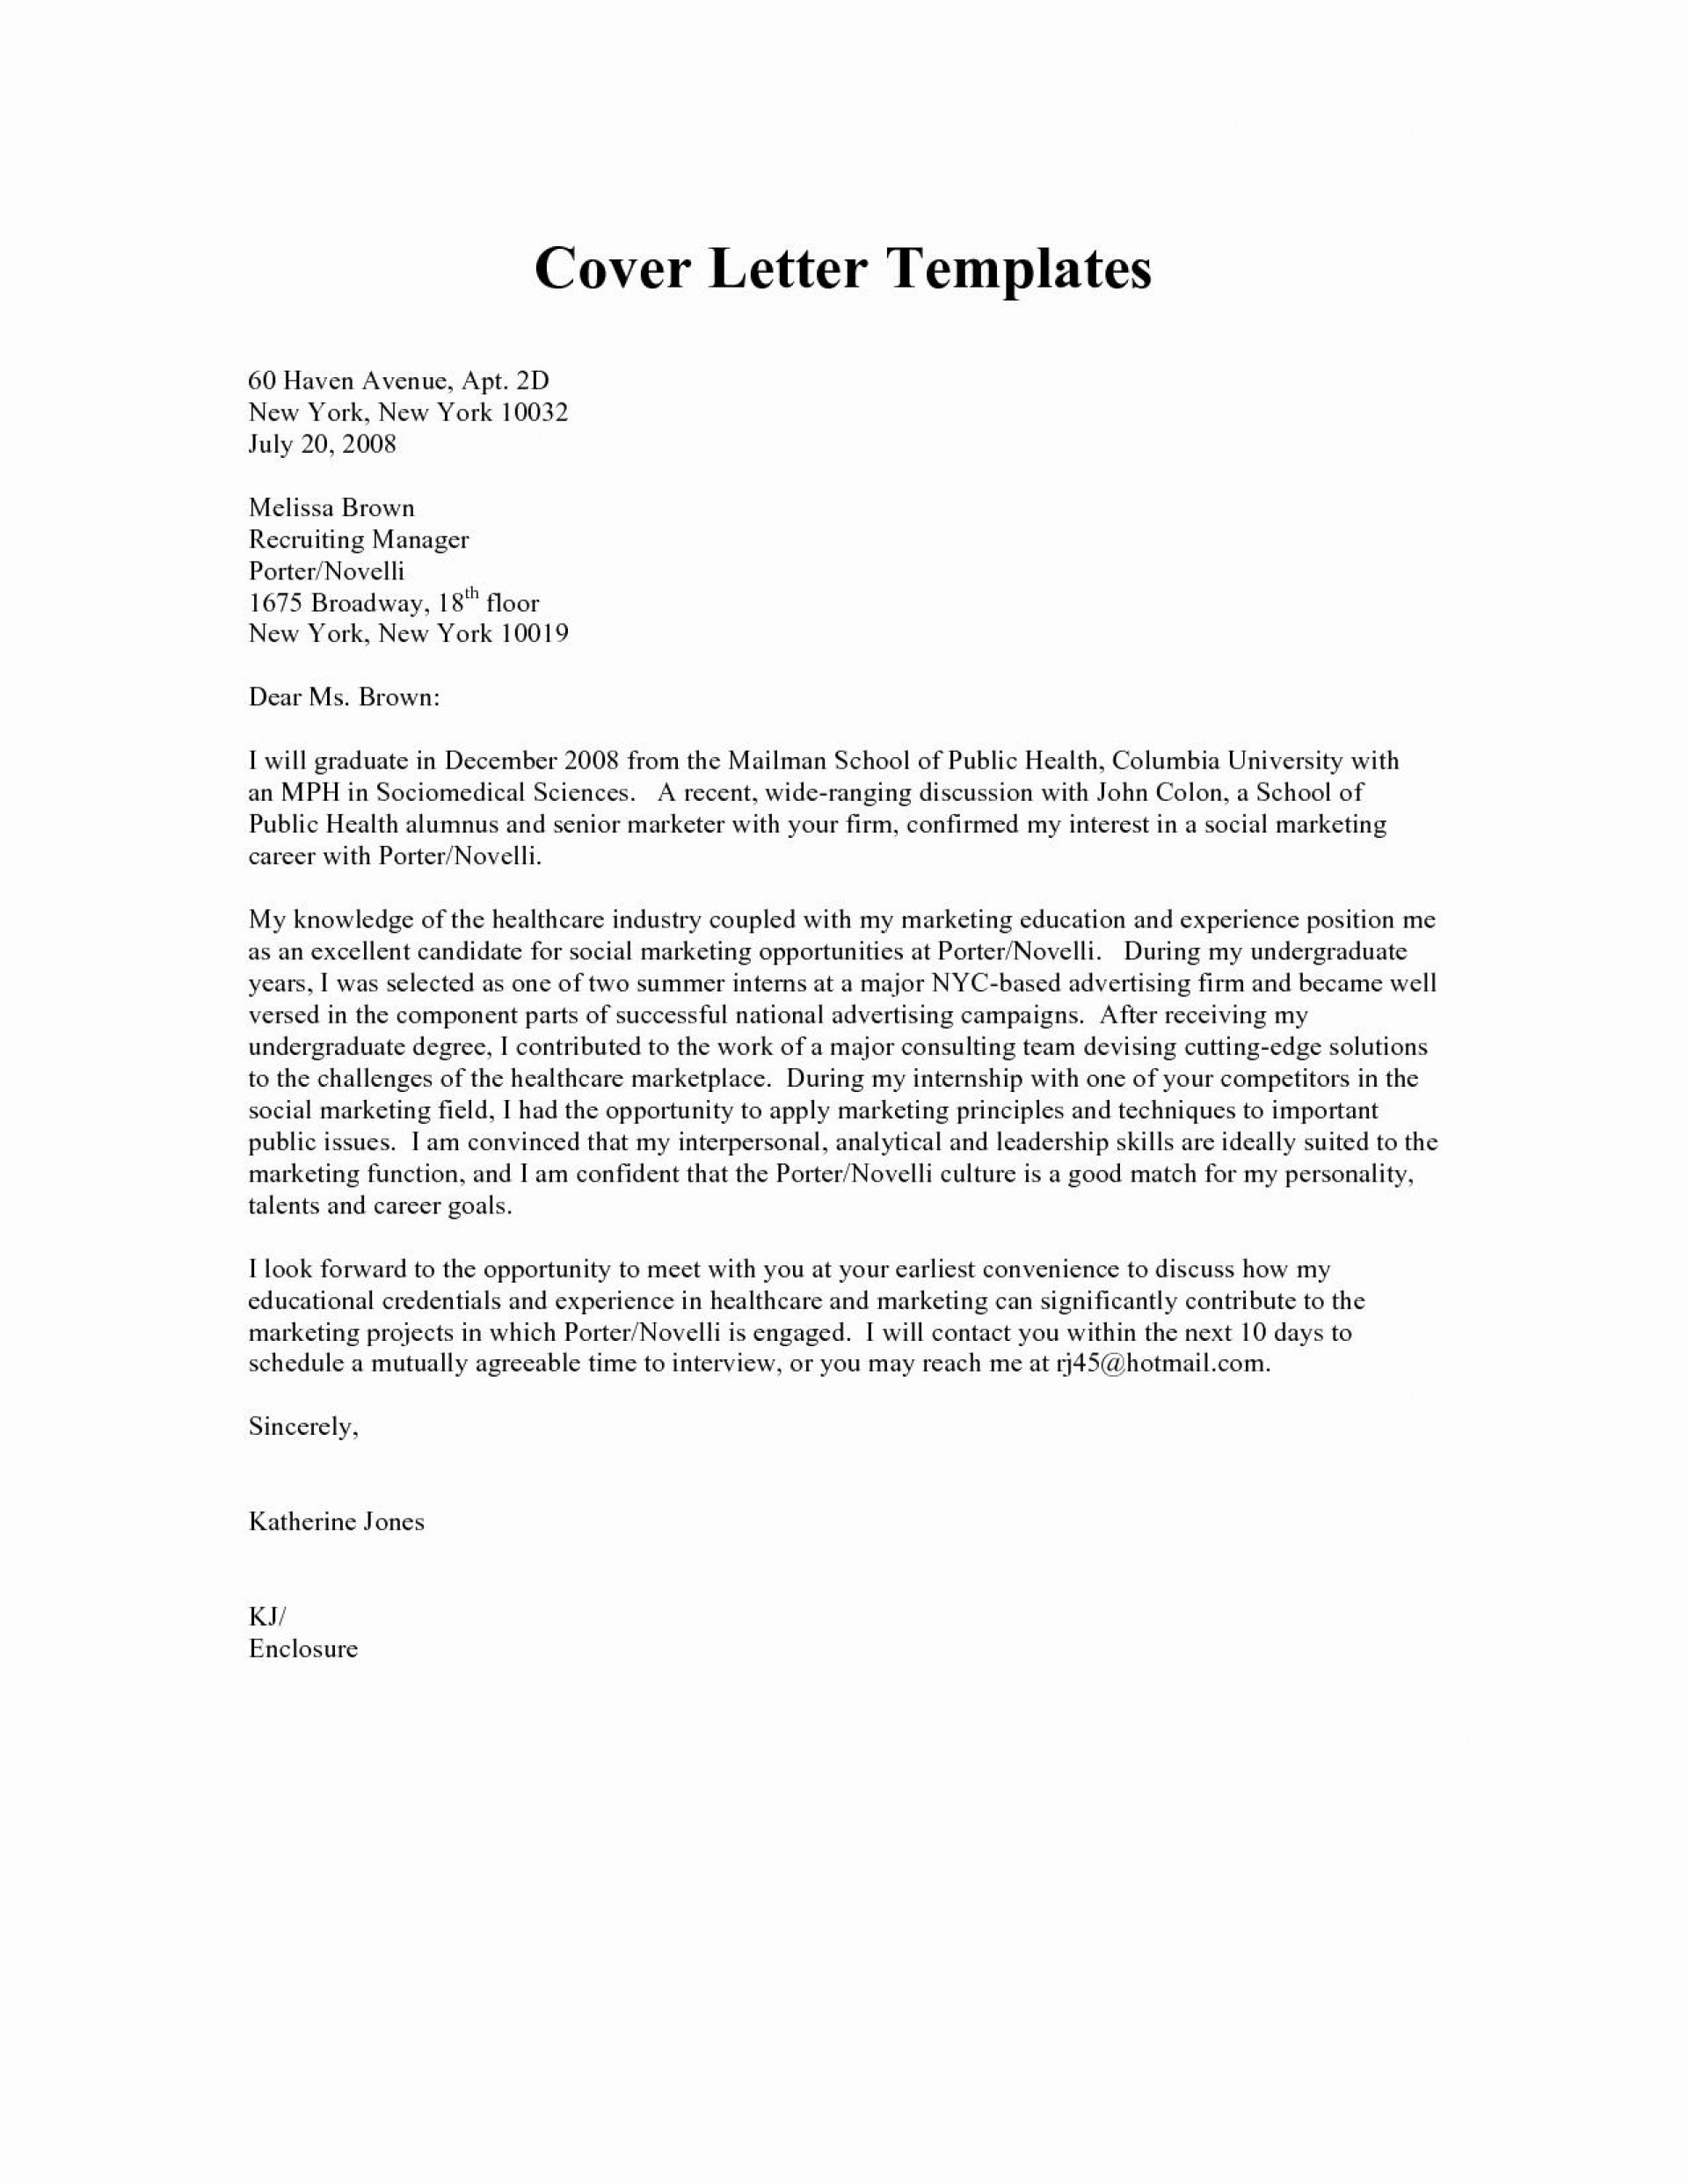 Teaching Cover Letter Examples Education Cover Letter Template Best 023 Teacher Cover Letter